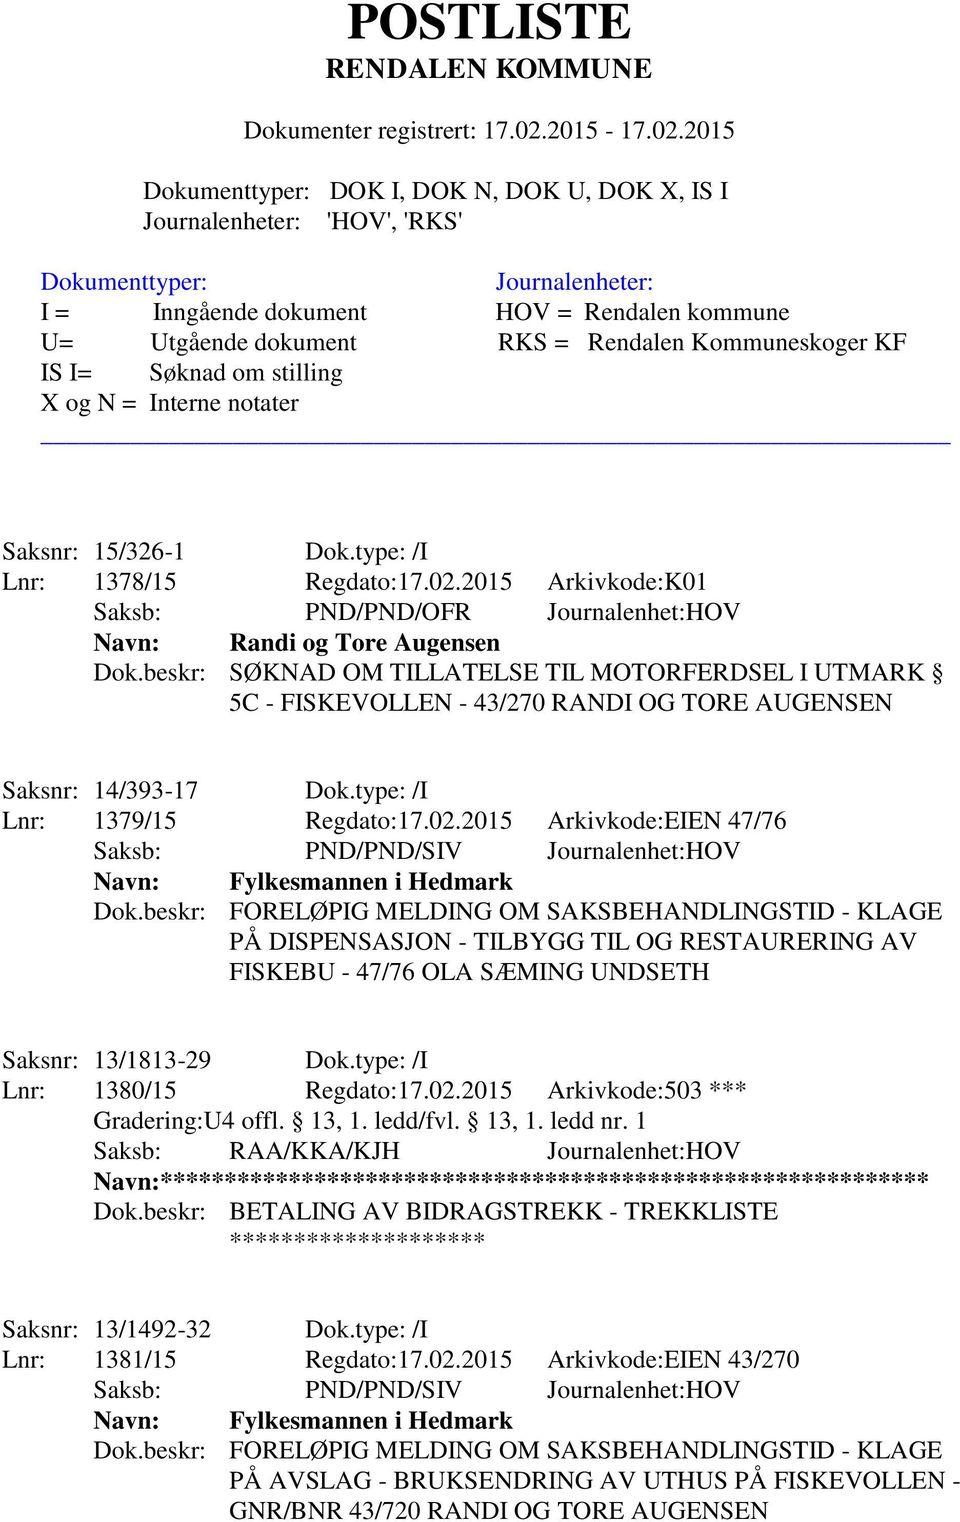 2015 Arkivkode:EIEN 47/76 Saksb: PND/PND/SIV Journalenhet:HOV Navn: Fylkesmannen i Hedmark Dok.